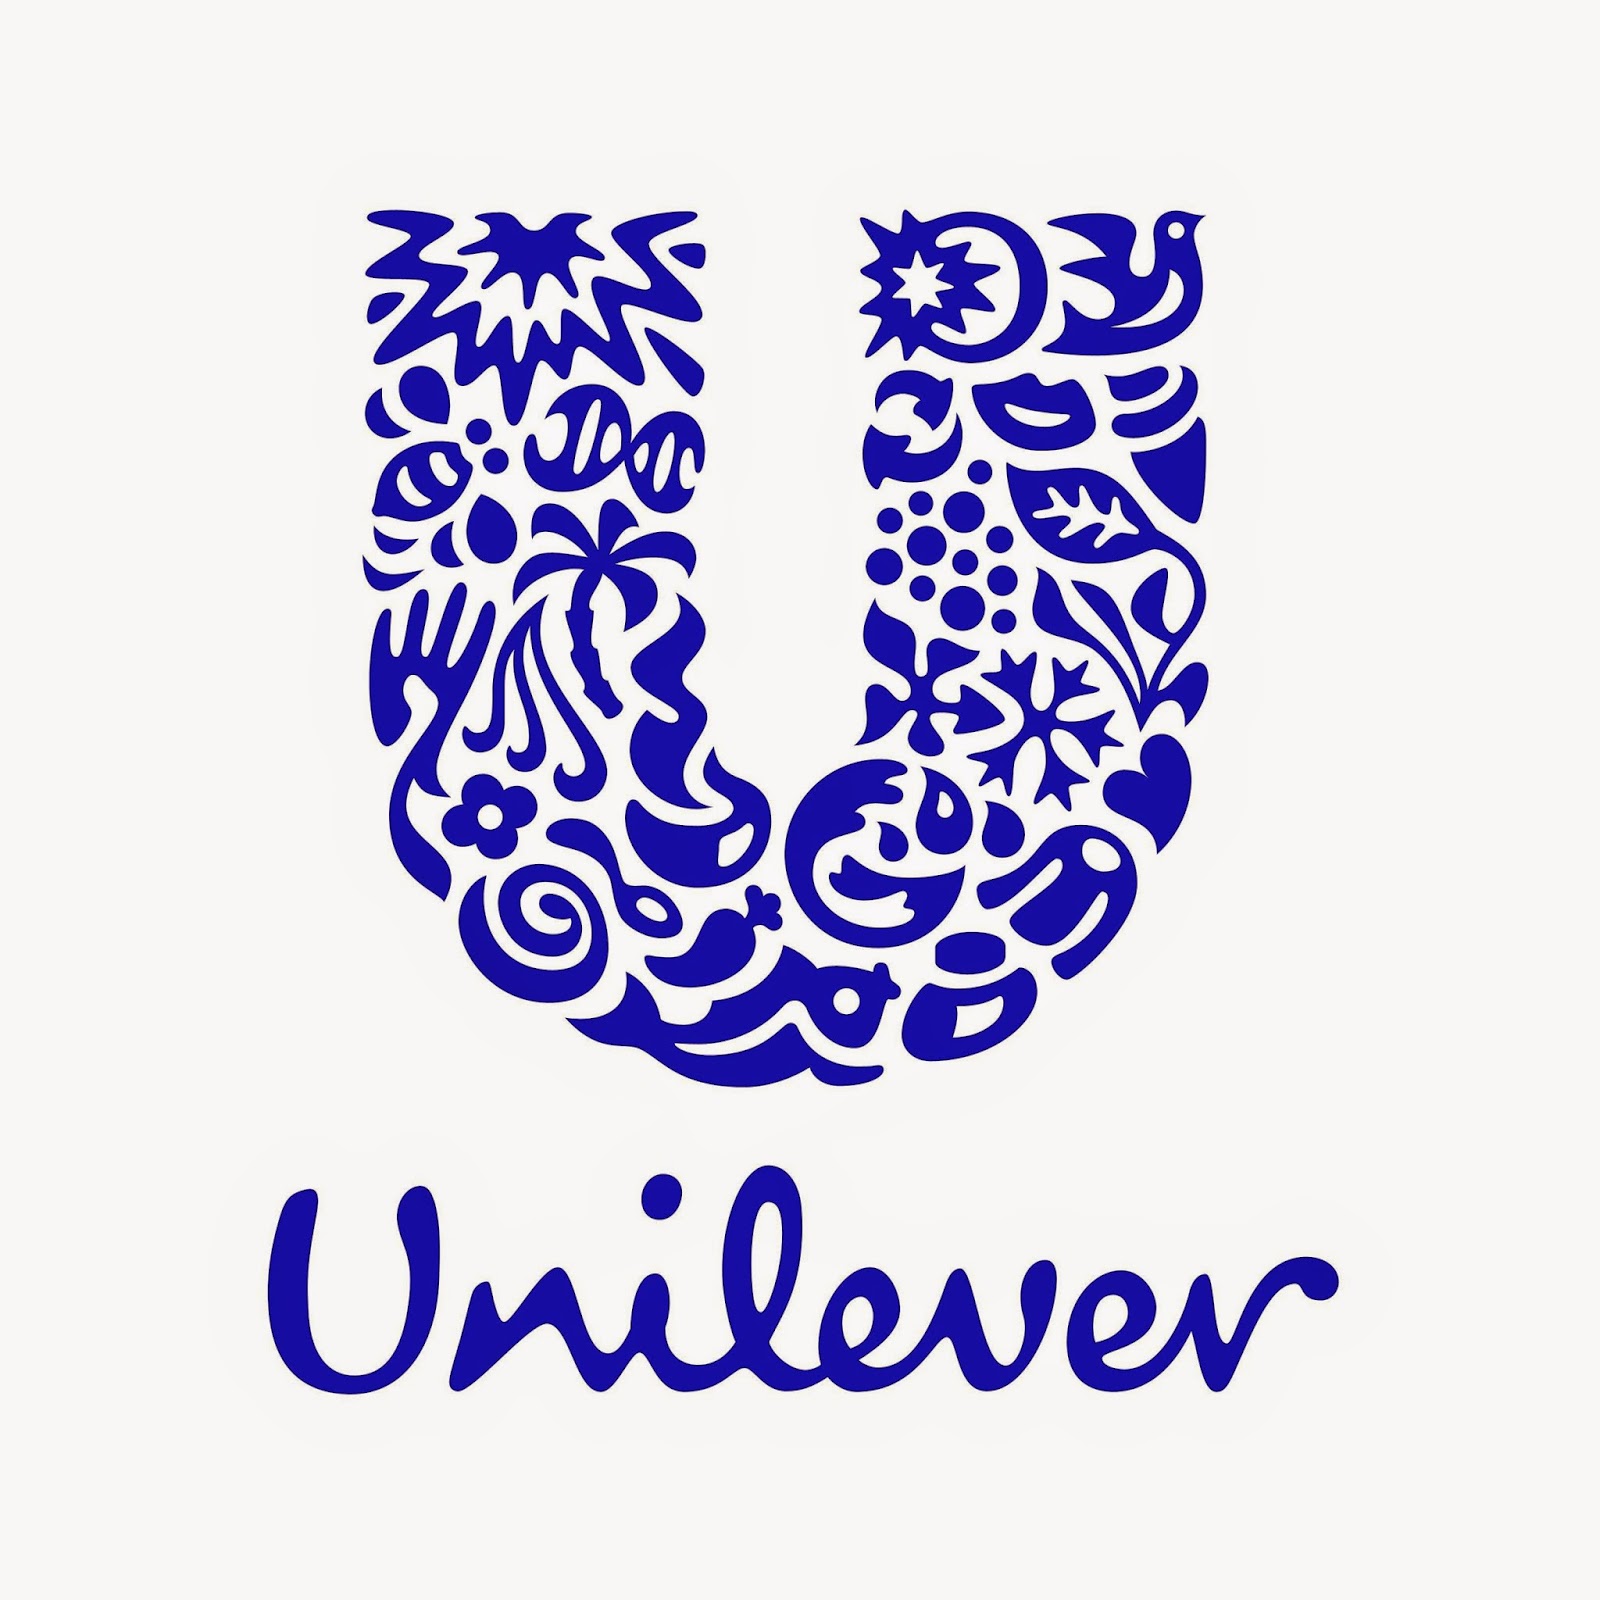 Lowongan Kerja Tangerang 2017 Di PT.Unilever Indonesia